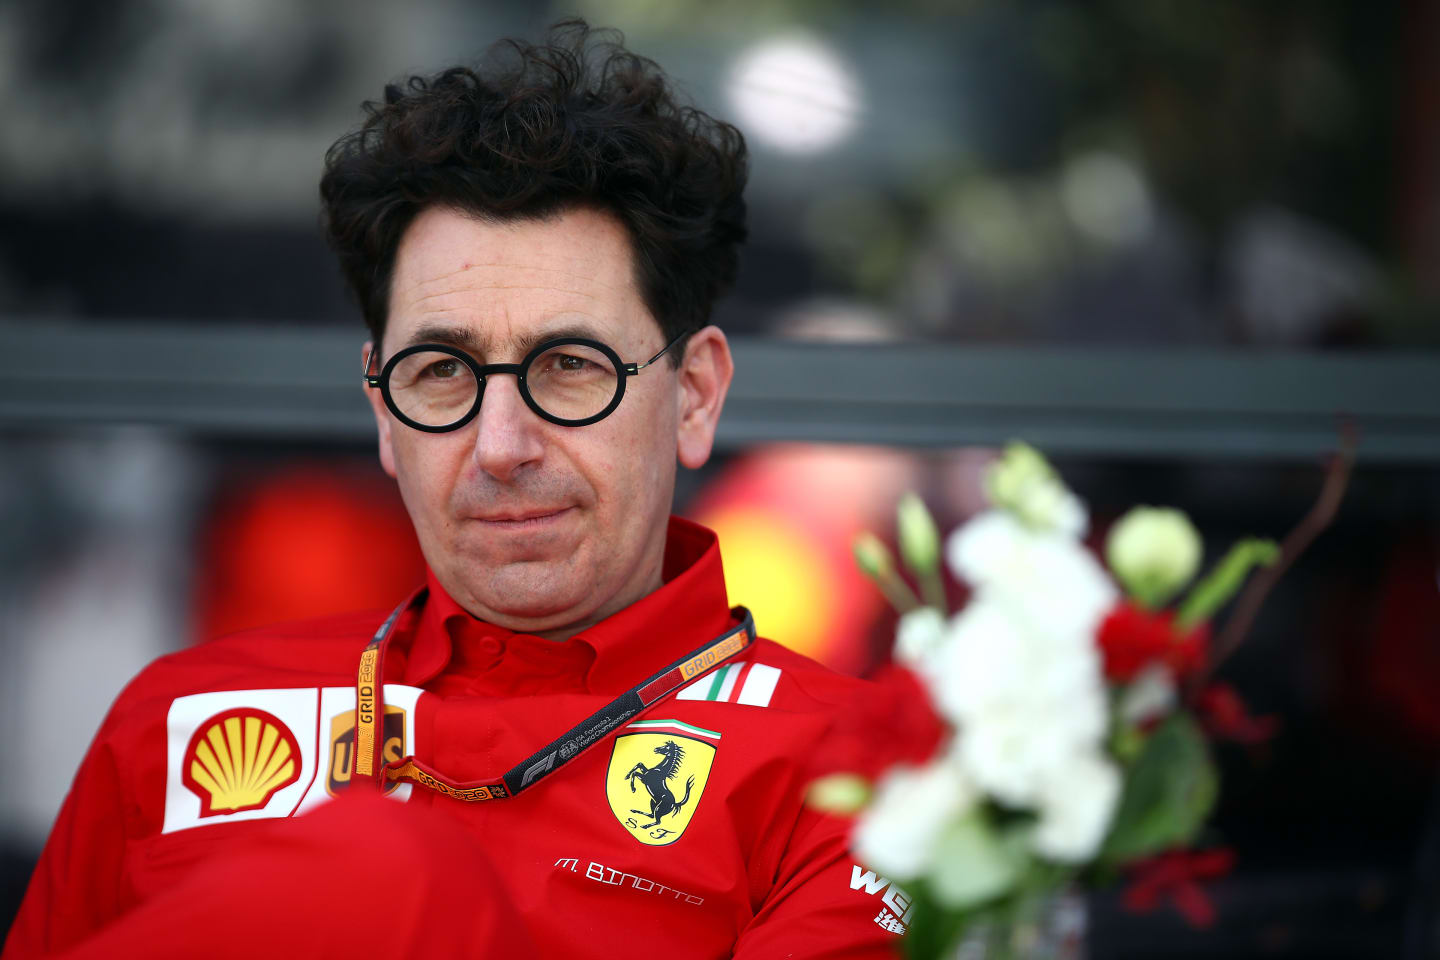 MELBOURNE, AUSTRALIA - MARCH 12: Ferrari Team Principal Mattia Binotto looks on in the Paddock